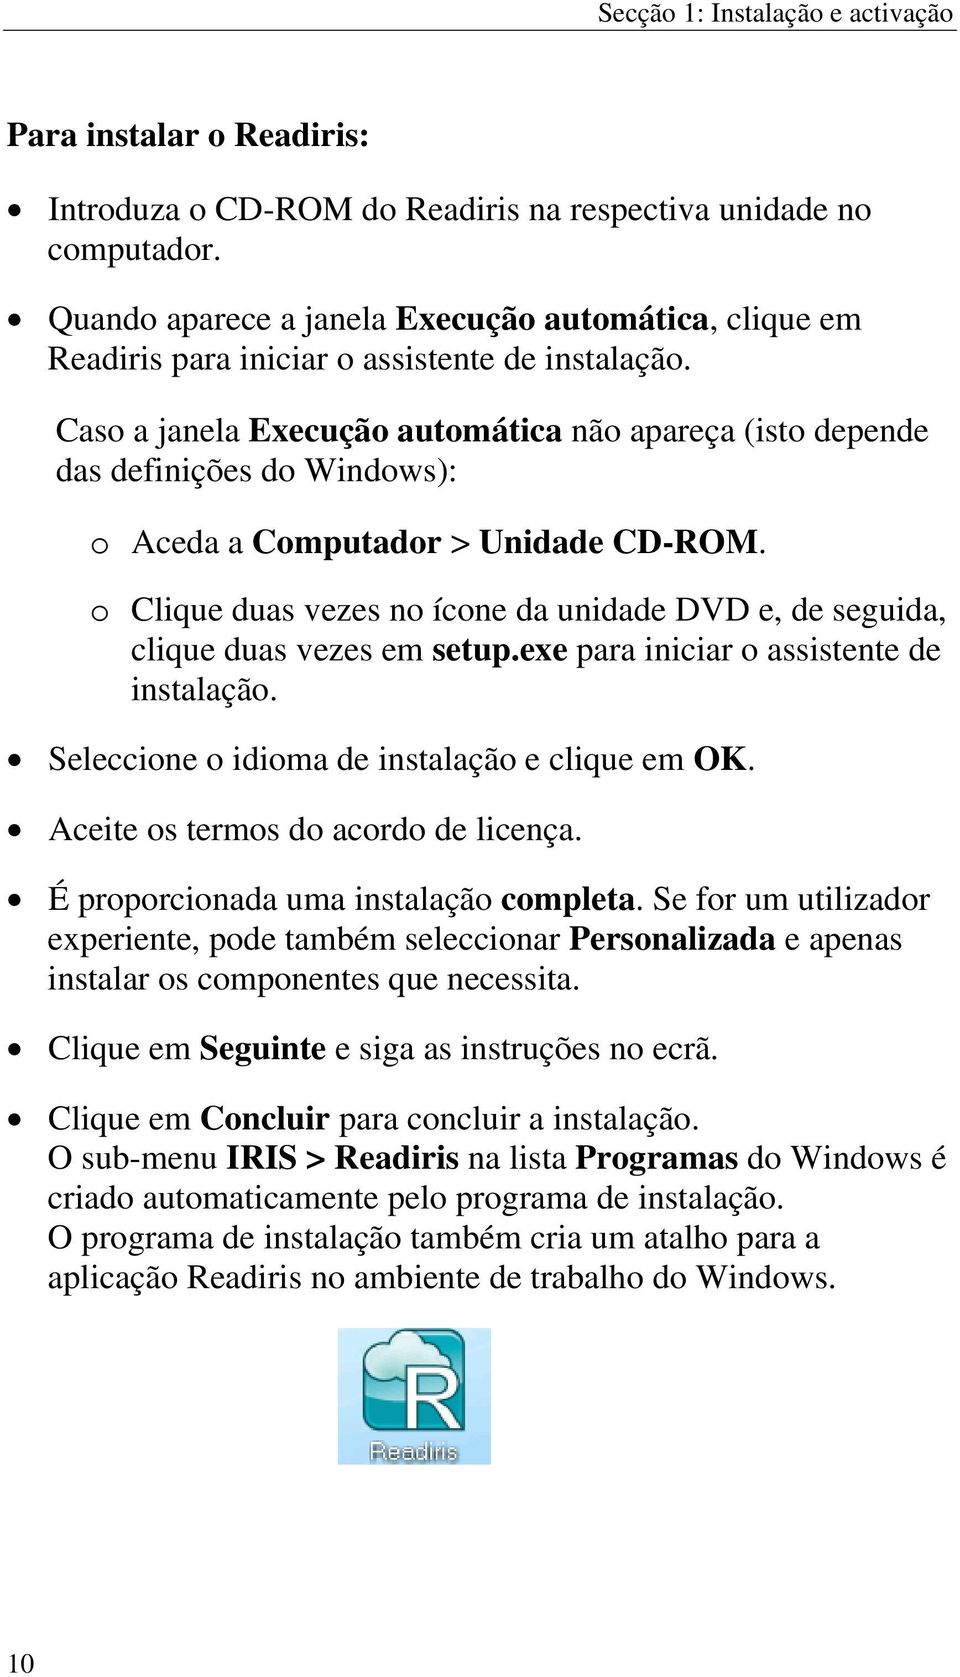 Caso a janela Execução automática não apareça (isto depende das definições do Windows): o Aceda a Computador > Unidade CD-ROM.